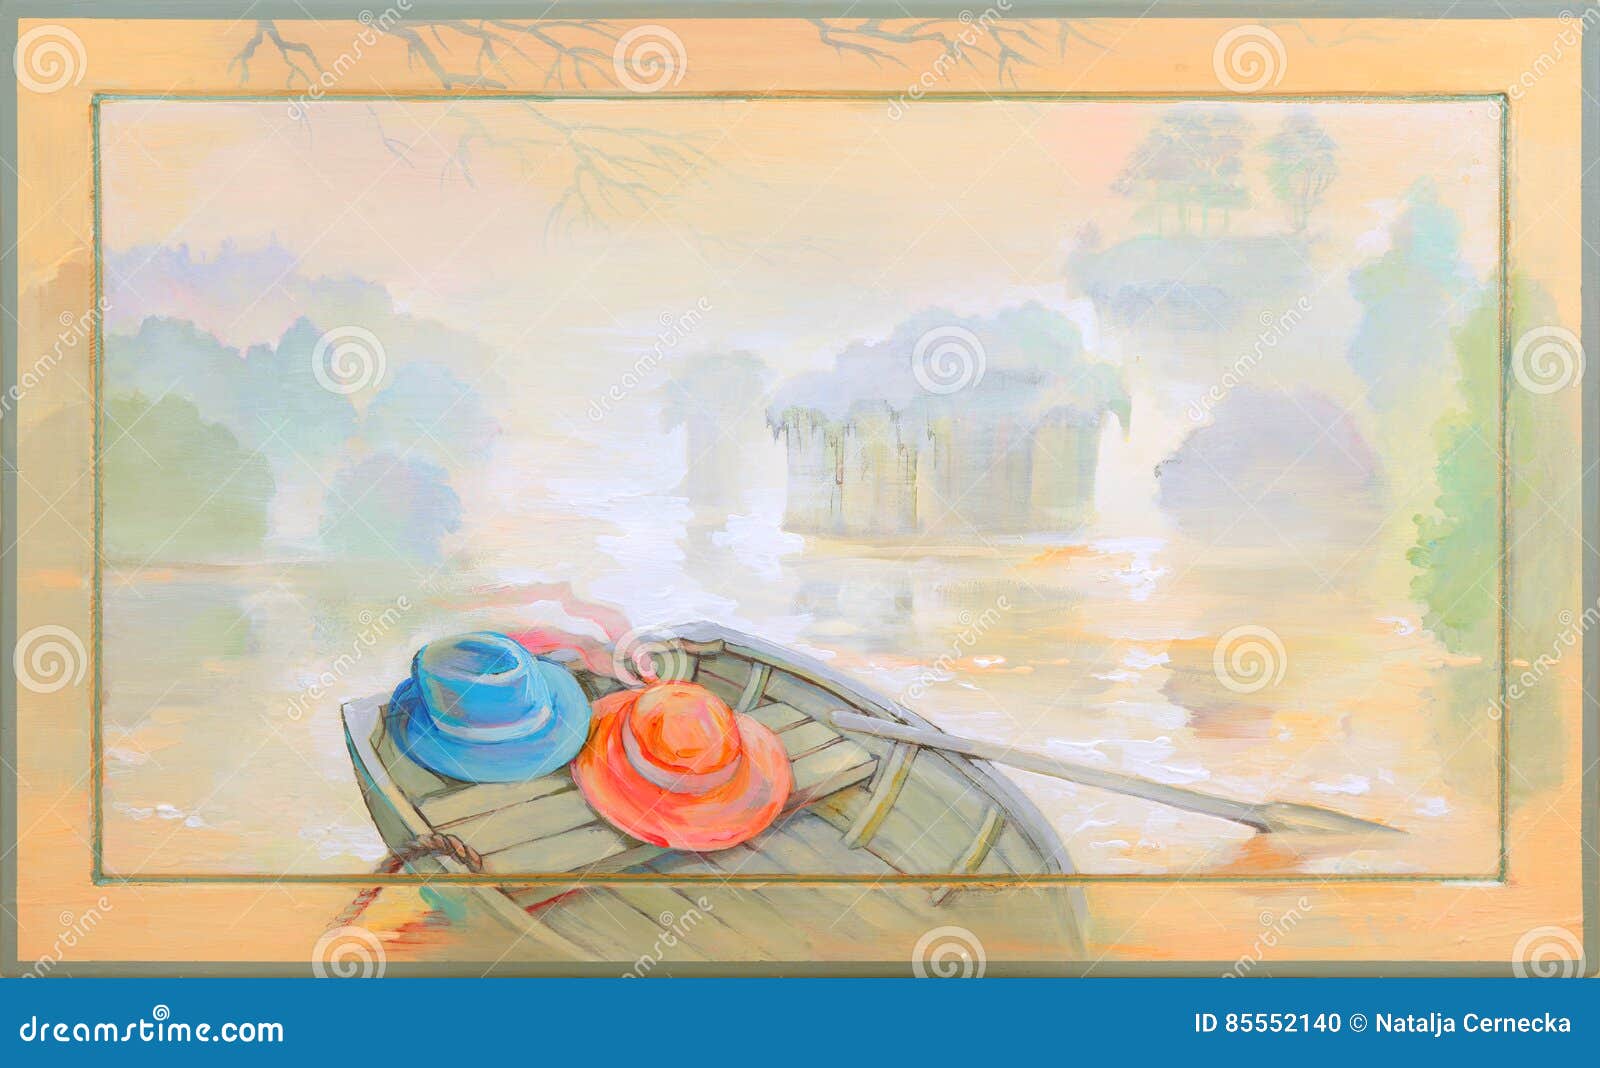 Nella nebbia Bello paesaggio con una barca sulla sponda del fiume Pittura a olio su legno. Foto di pittura dall'artista Natalja Cernecka